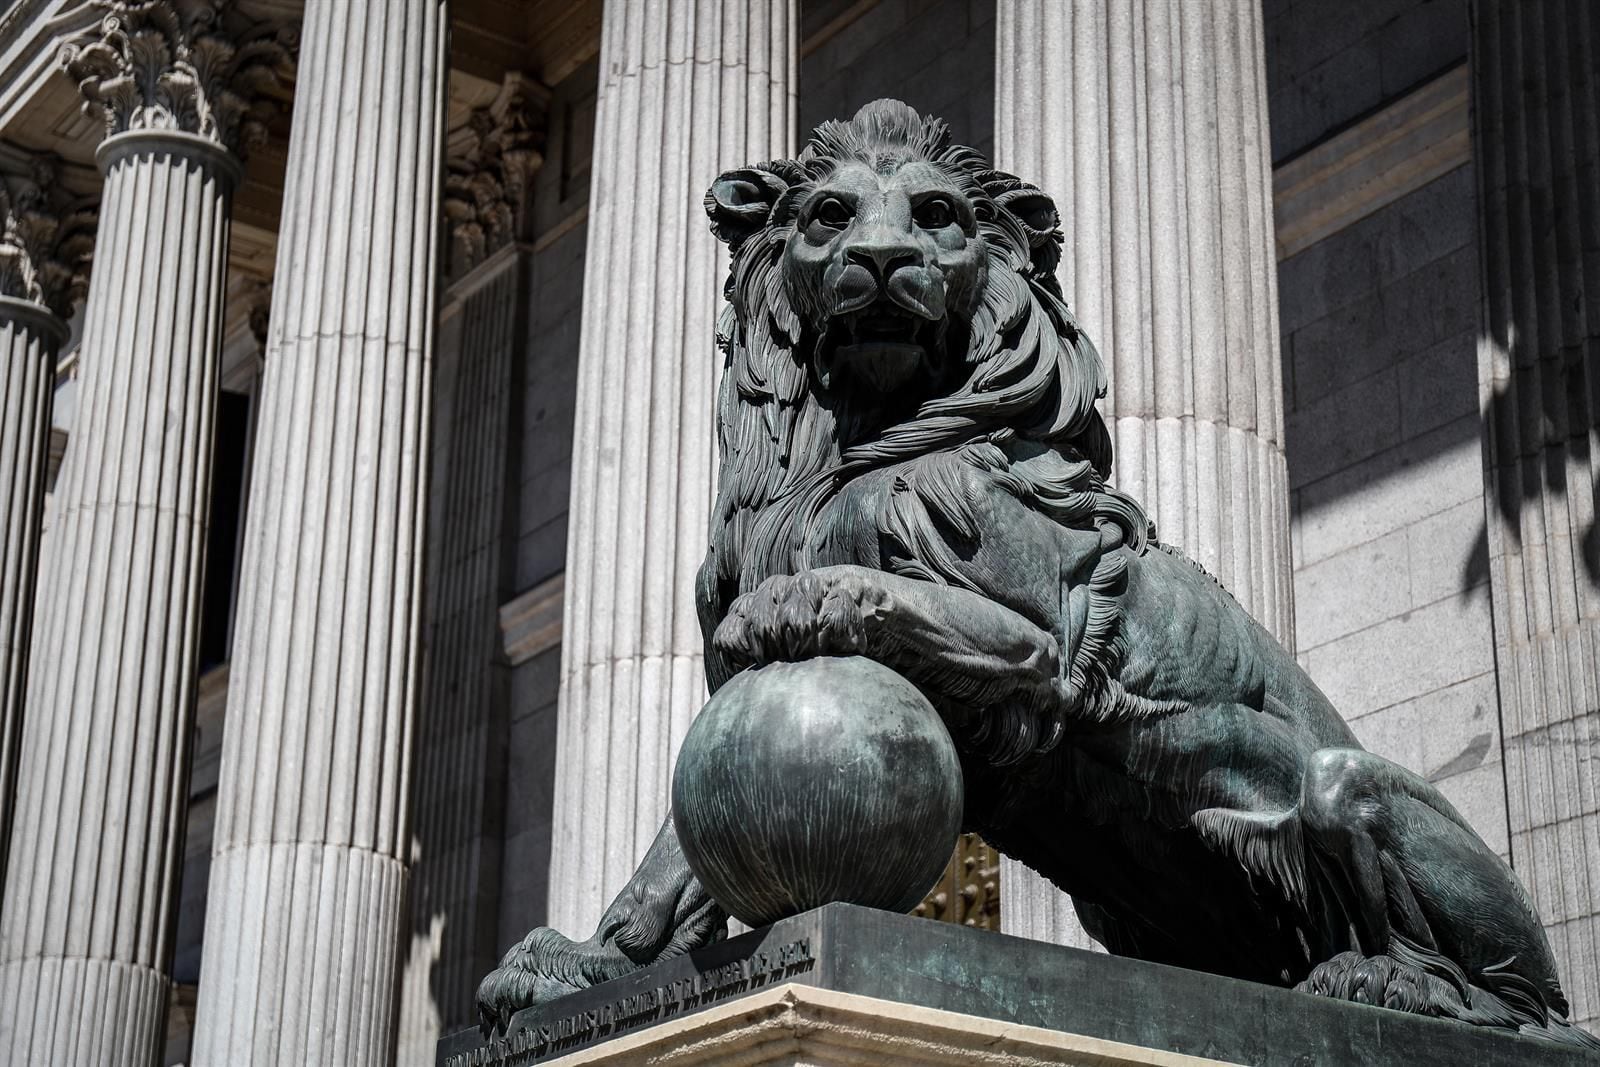 Uno de los emblemáticos leones que se encuentran delante de la fachada del Congreso de los Diputados en la Plaza de las Cortes de Madrid. (Óscar J.Barroso/Europa Press)
